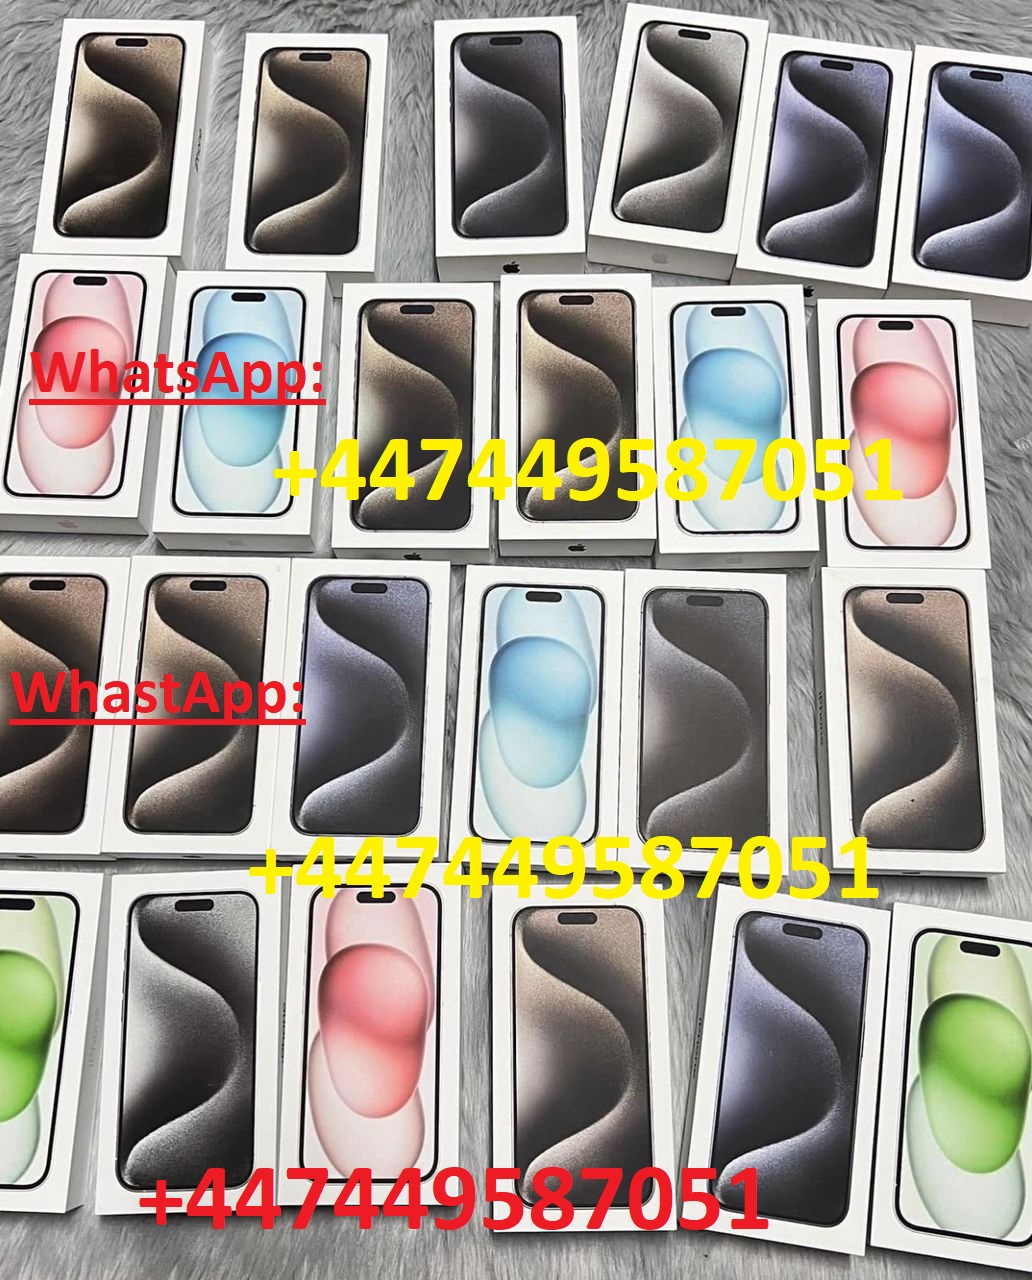 iPhone 15 pro, 700eur, iPhone 14 pro, 530eur, iPhone 13, 320eur, iPhone 15 pro max, 800eur, Samsung s24, 520eur